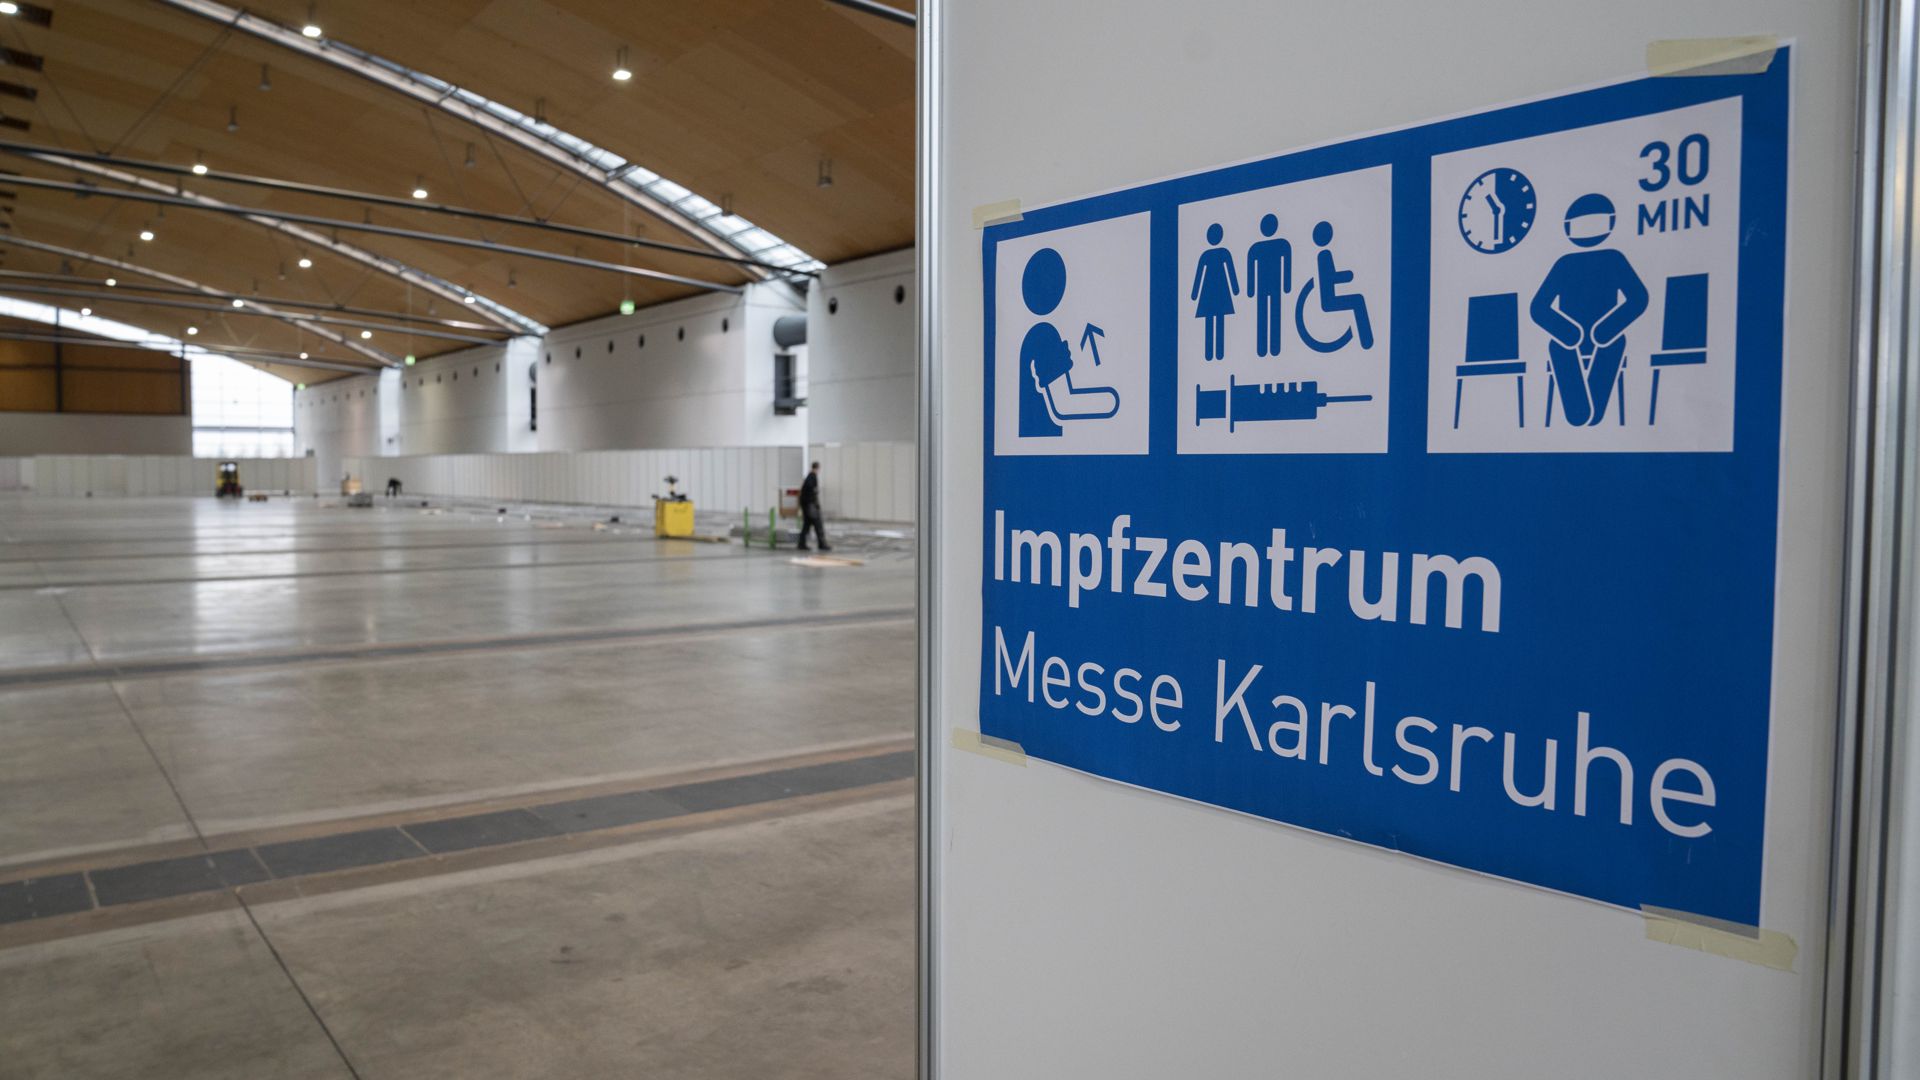 Die ersten Trennwände stehen schon: In der Messe Karlsruhe entsteht auf 12.500 Quadratmeter Fläche ein Zentrales Corona-Impfzentrum, dessen spezielles Konzept einen besonders zügigen und sicheren Betrieb ermöglichen soll. 